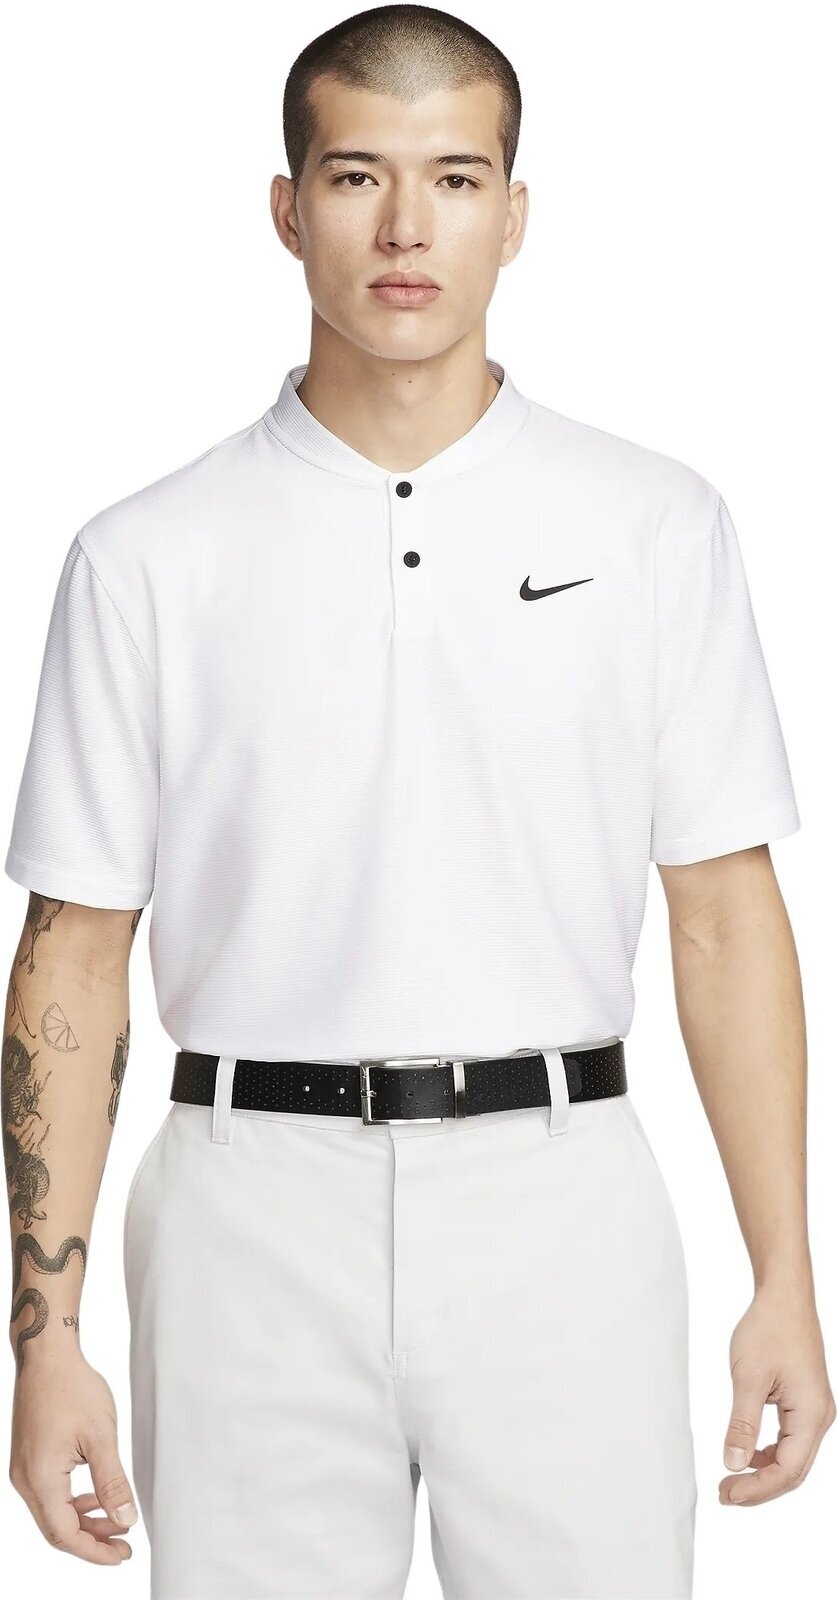 Polo košile Nike Dri-Fit Victory Texture Mens Polo White/Black S Polo košile